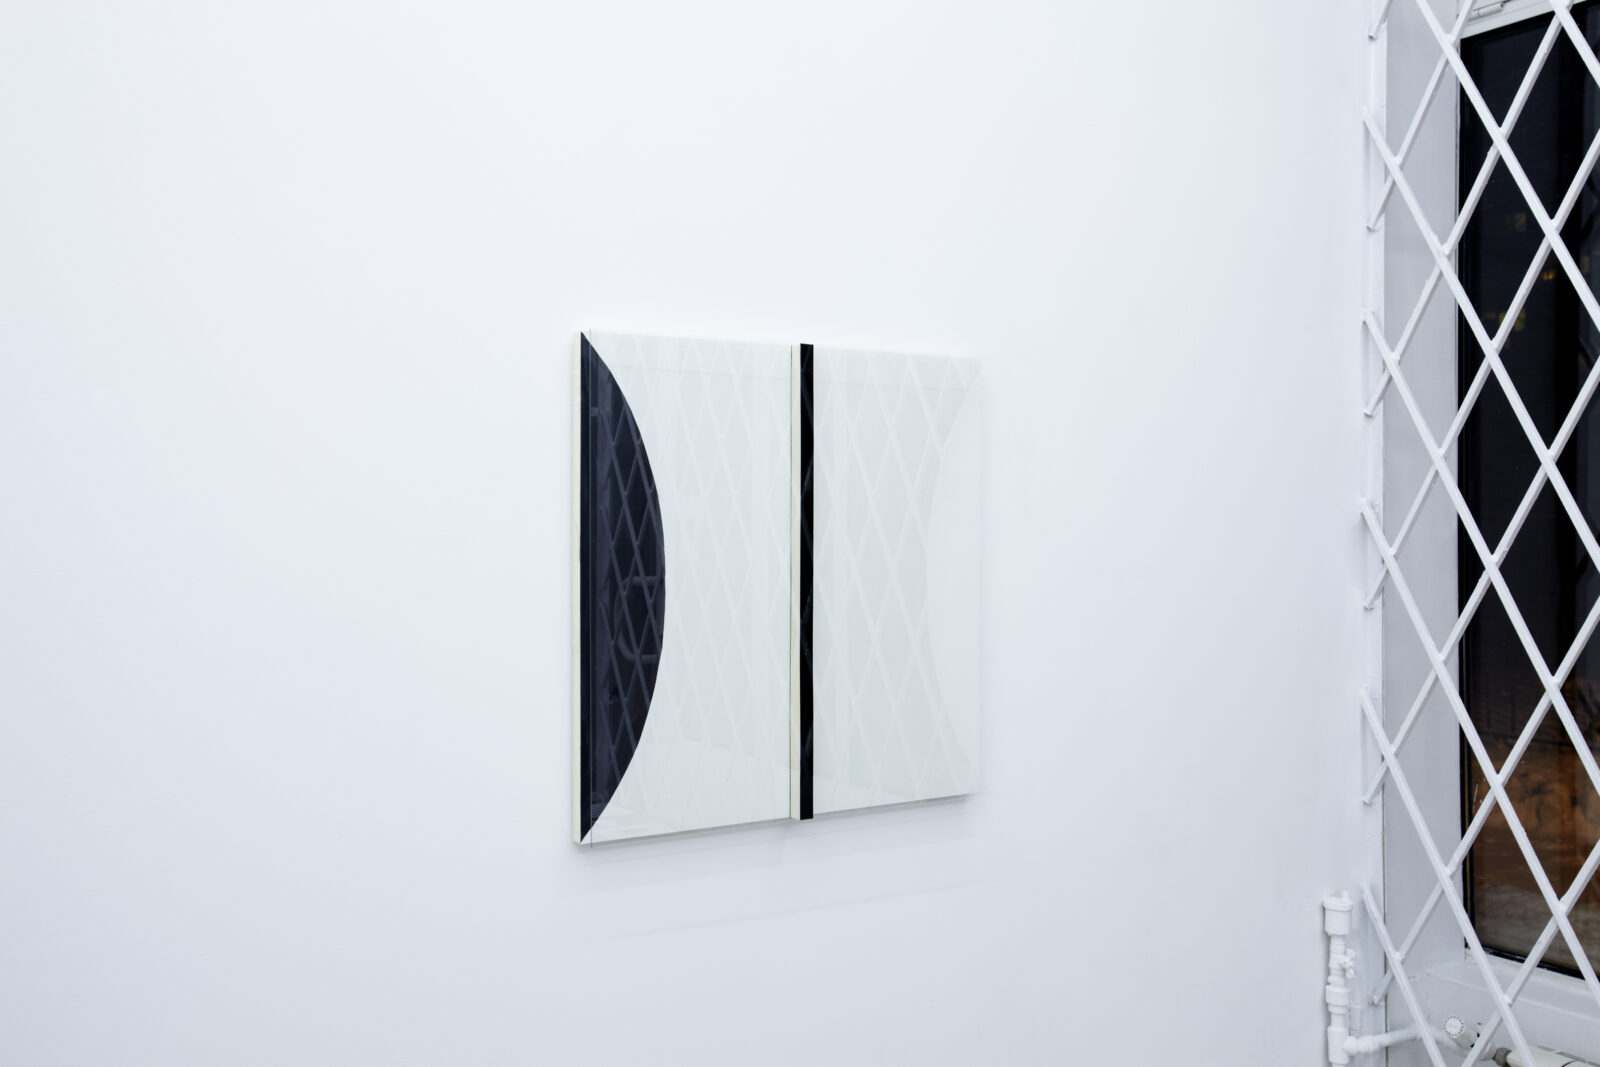 Marcin Zarzeka
Playground Love
2013
foamboard, double-sided tape, glass
60 × 60 × 4 cm